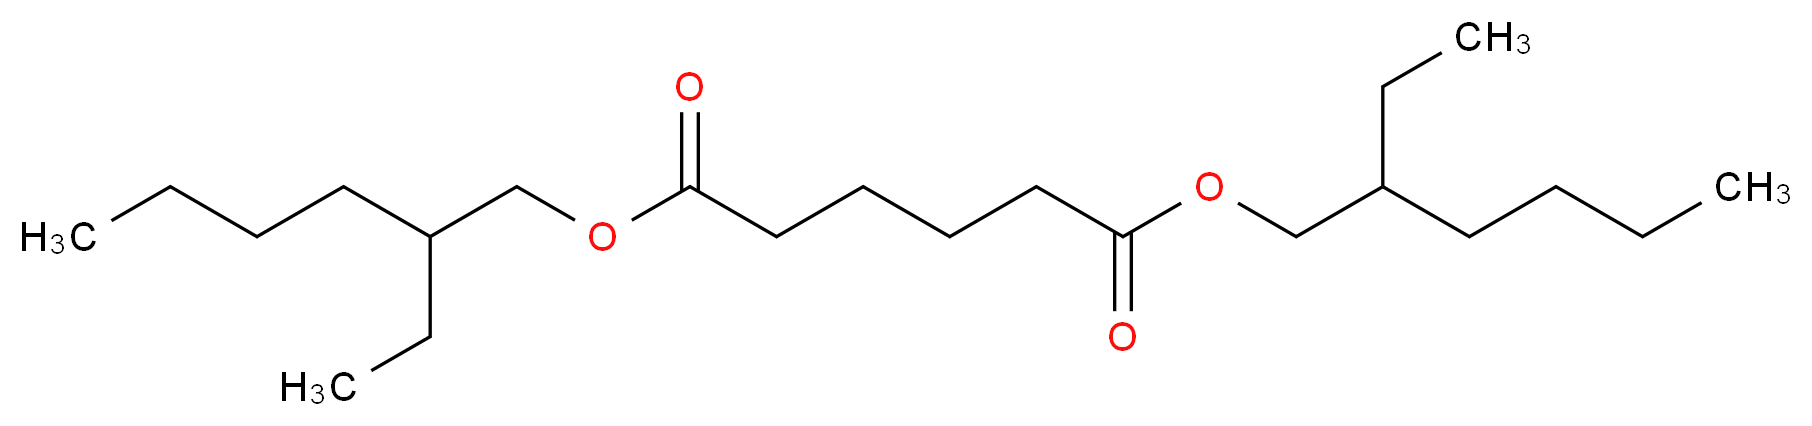 Bis(2-ethylhexyl) adipate_Molecular_structure_CAS_103-23-1)